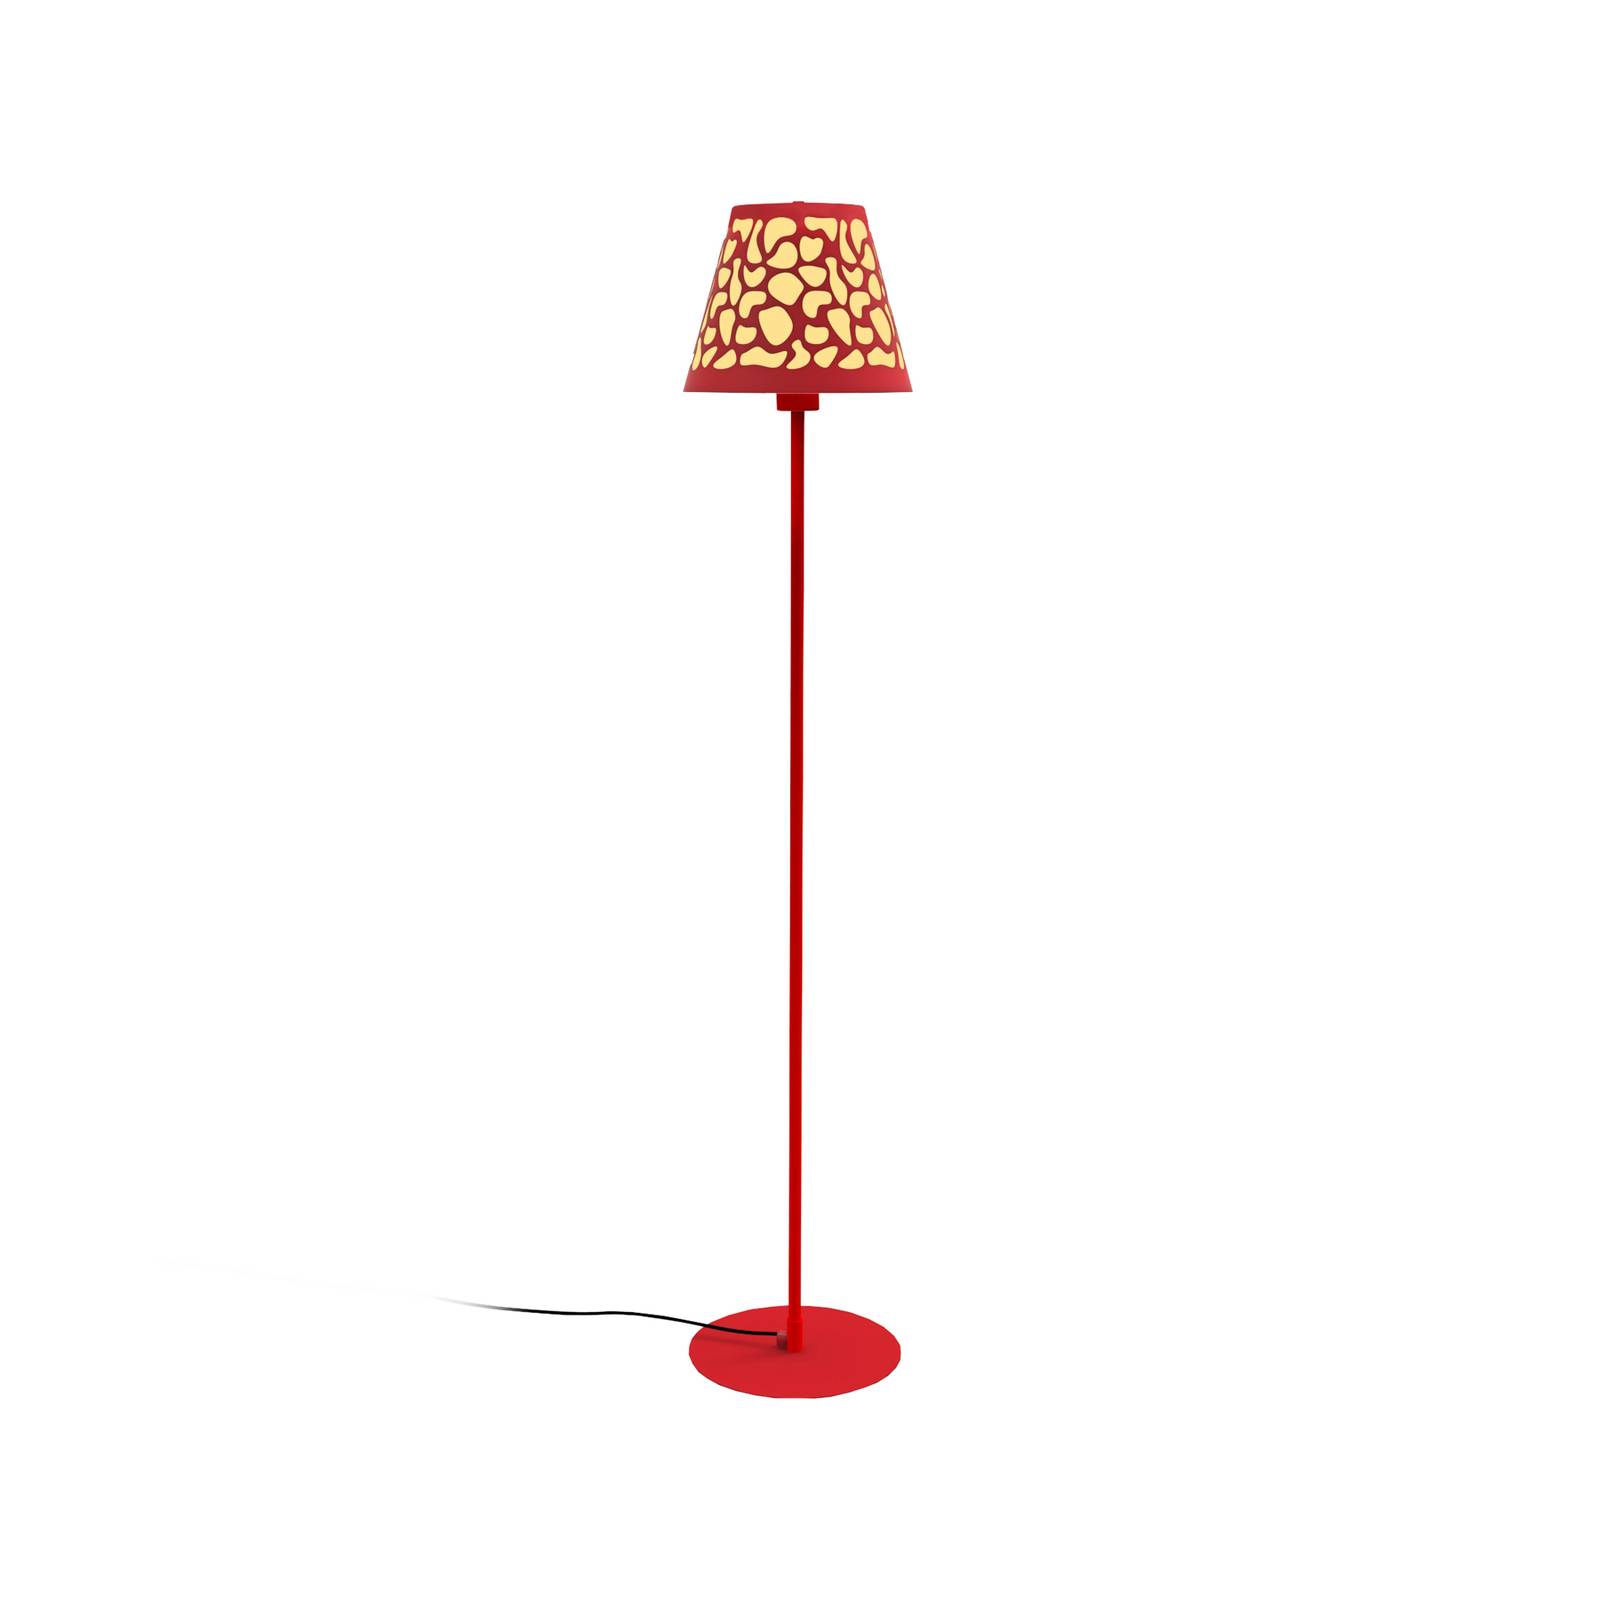 Aluminor Nihoa gulvlampe med hullmønster rød/gul